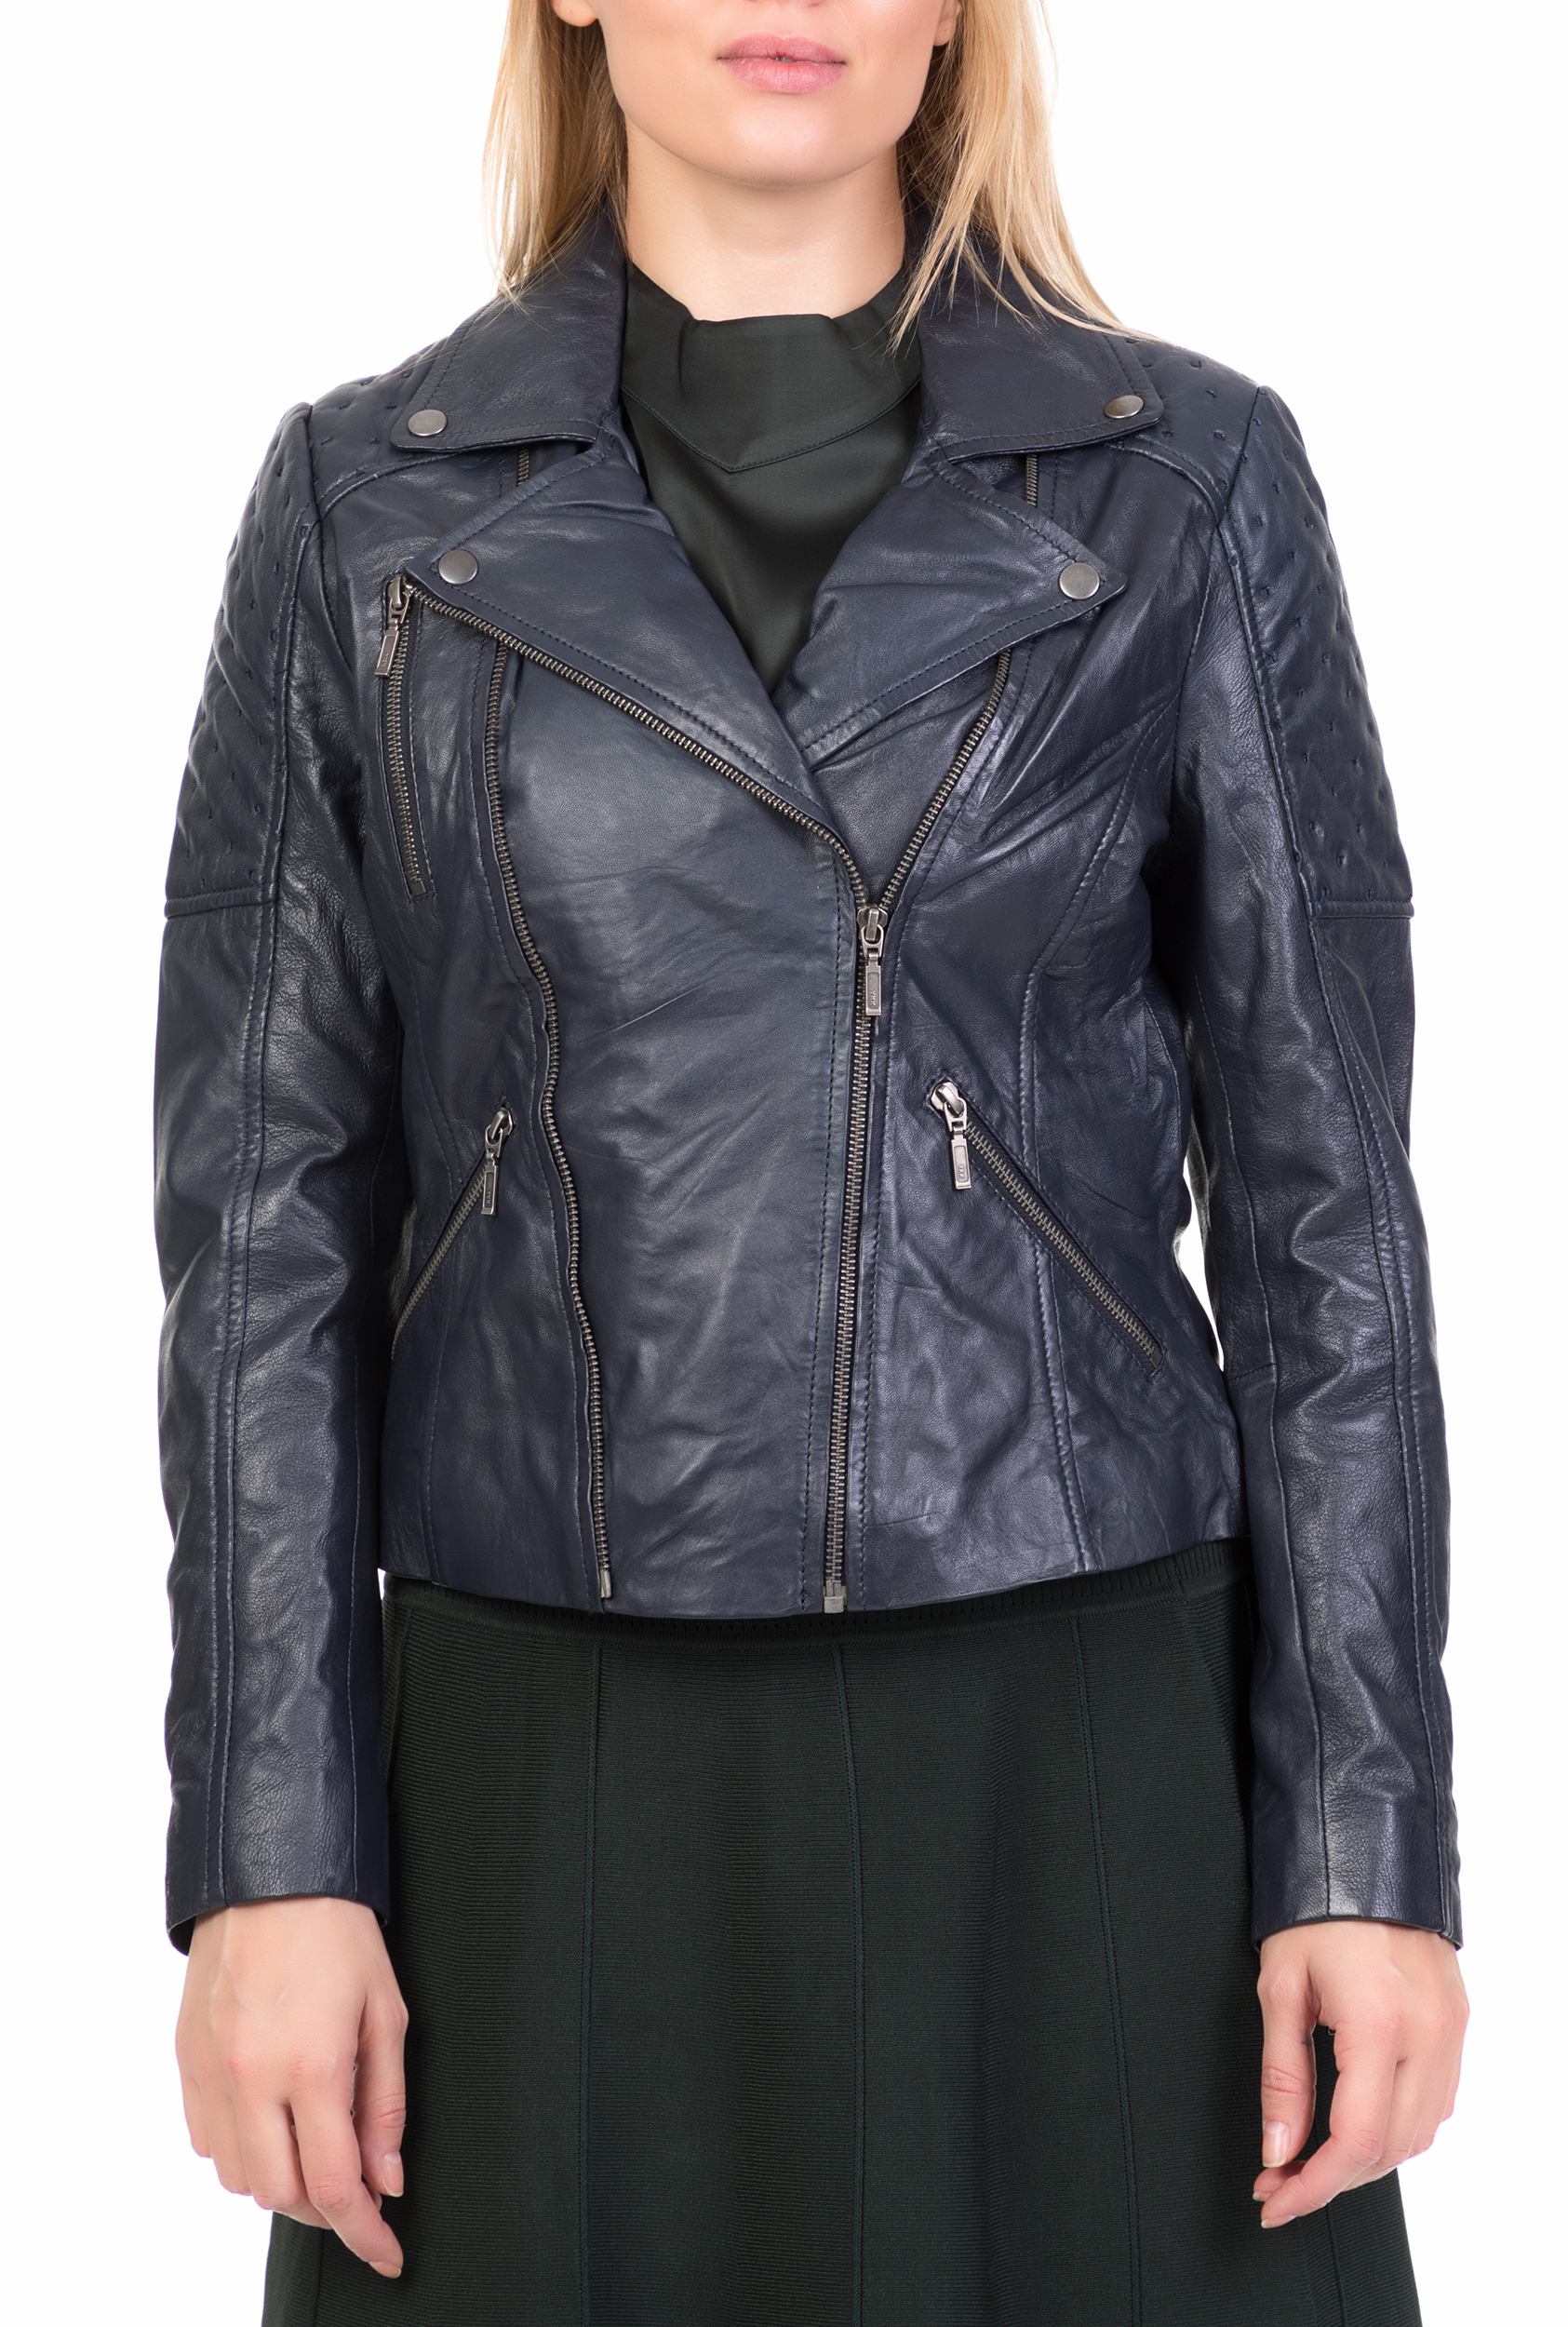 Γυναικεία/Ρούχα/Πανωφόρια/Τζάκετς NUMPH - Γυναικείο δερμάτινο jacket BACUPARI NUMPH σκούρο μπλε